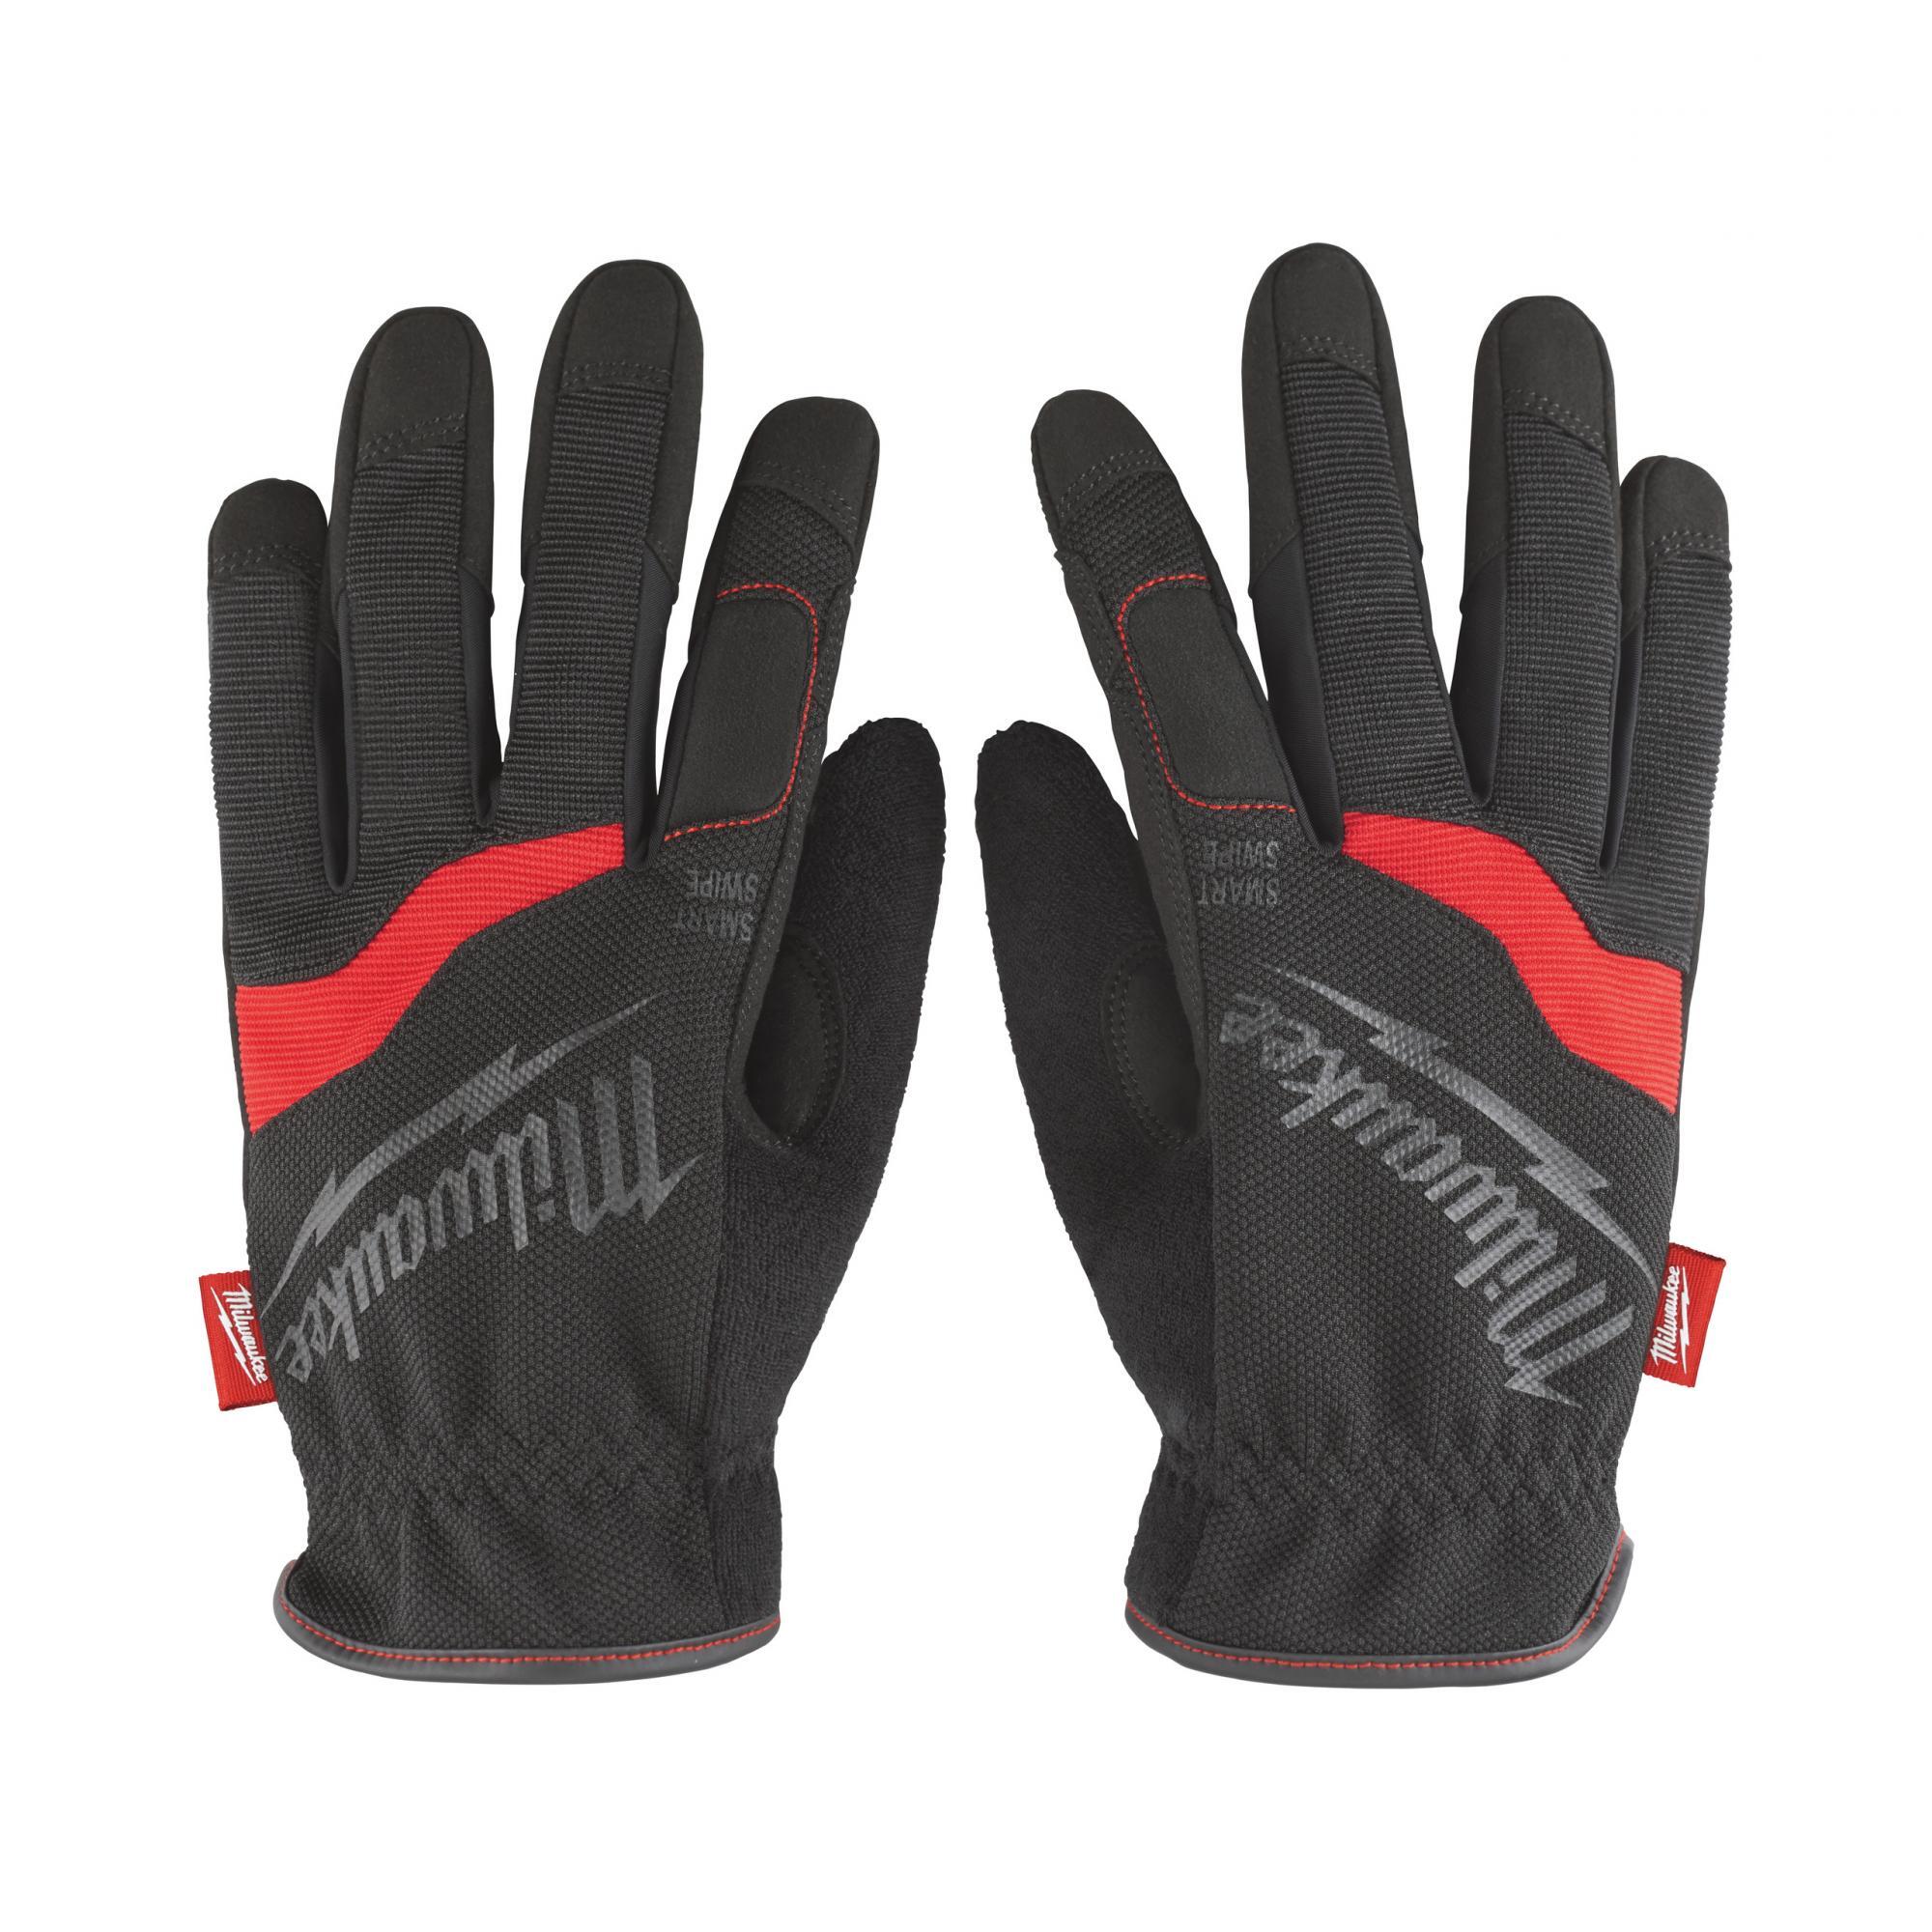 Перчатки Milwaukee Free-Flex, размер L/9, 48229712 перчатки 3 открытых пальца 12043n envision